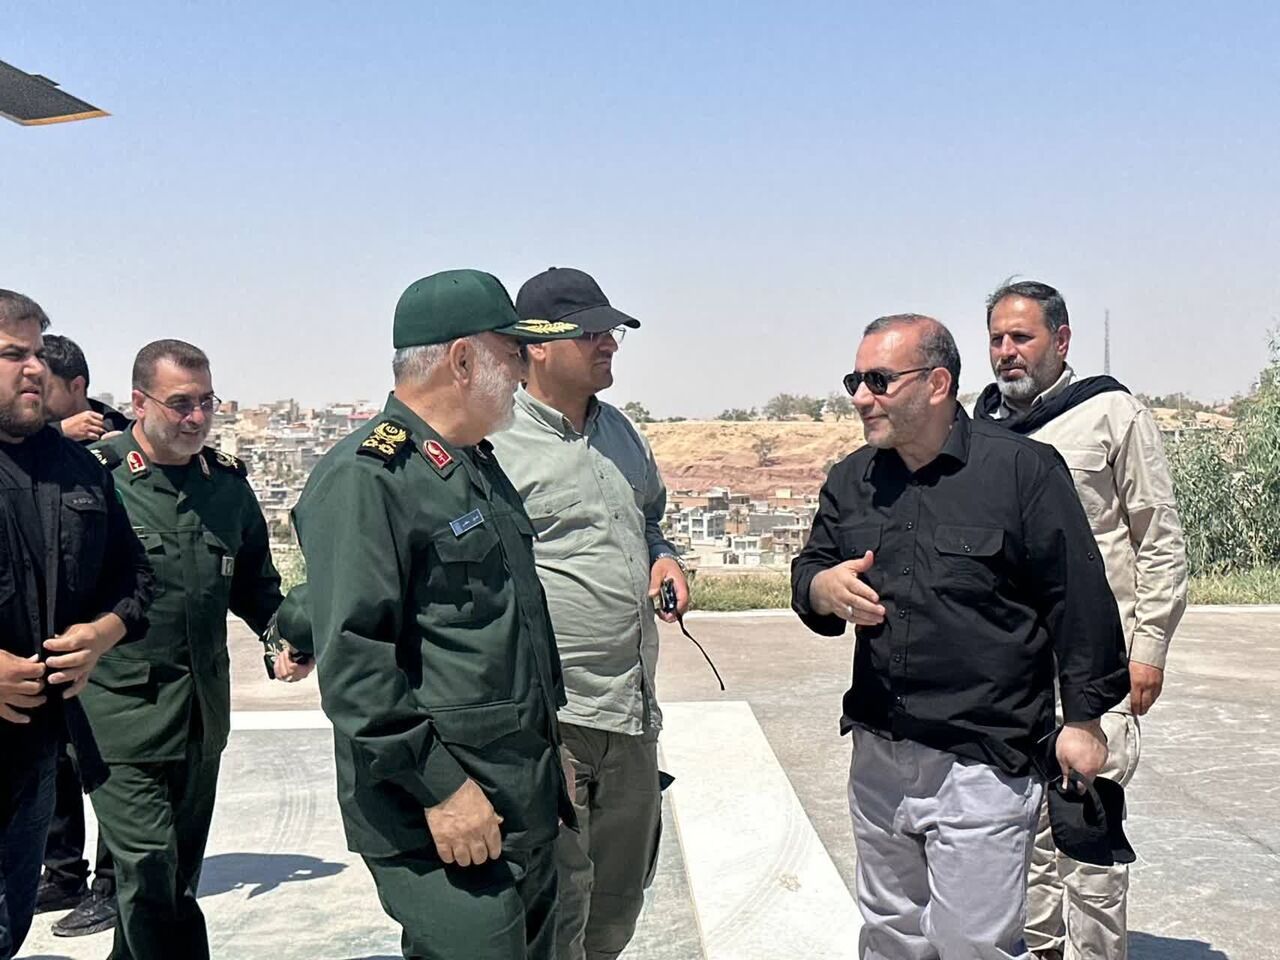 فرمانده سپاه پاسداران وضعیت تردد زائران اربعین در مرز خسروی را بررسی کرد